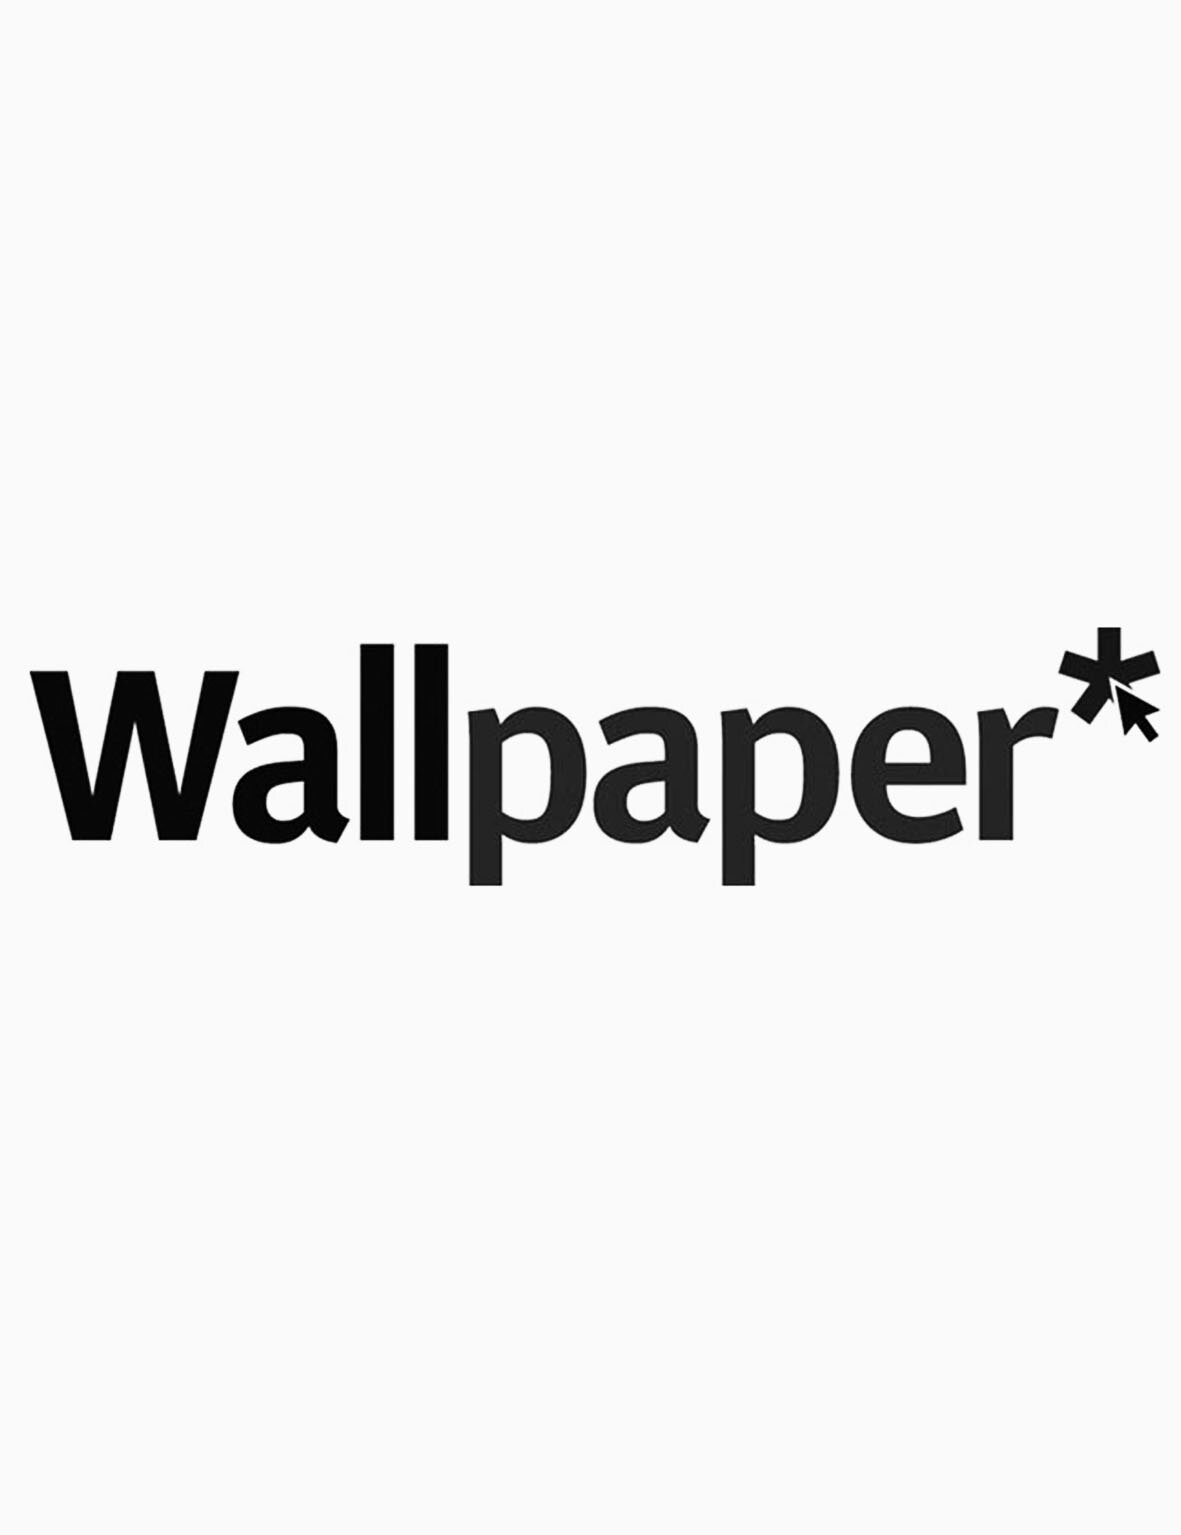 WALLPAPER,  SEP 2017